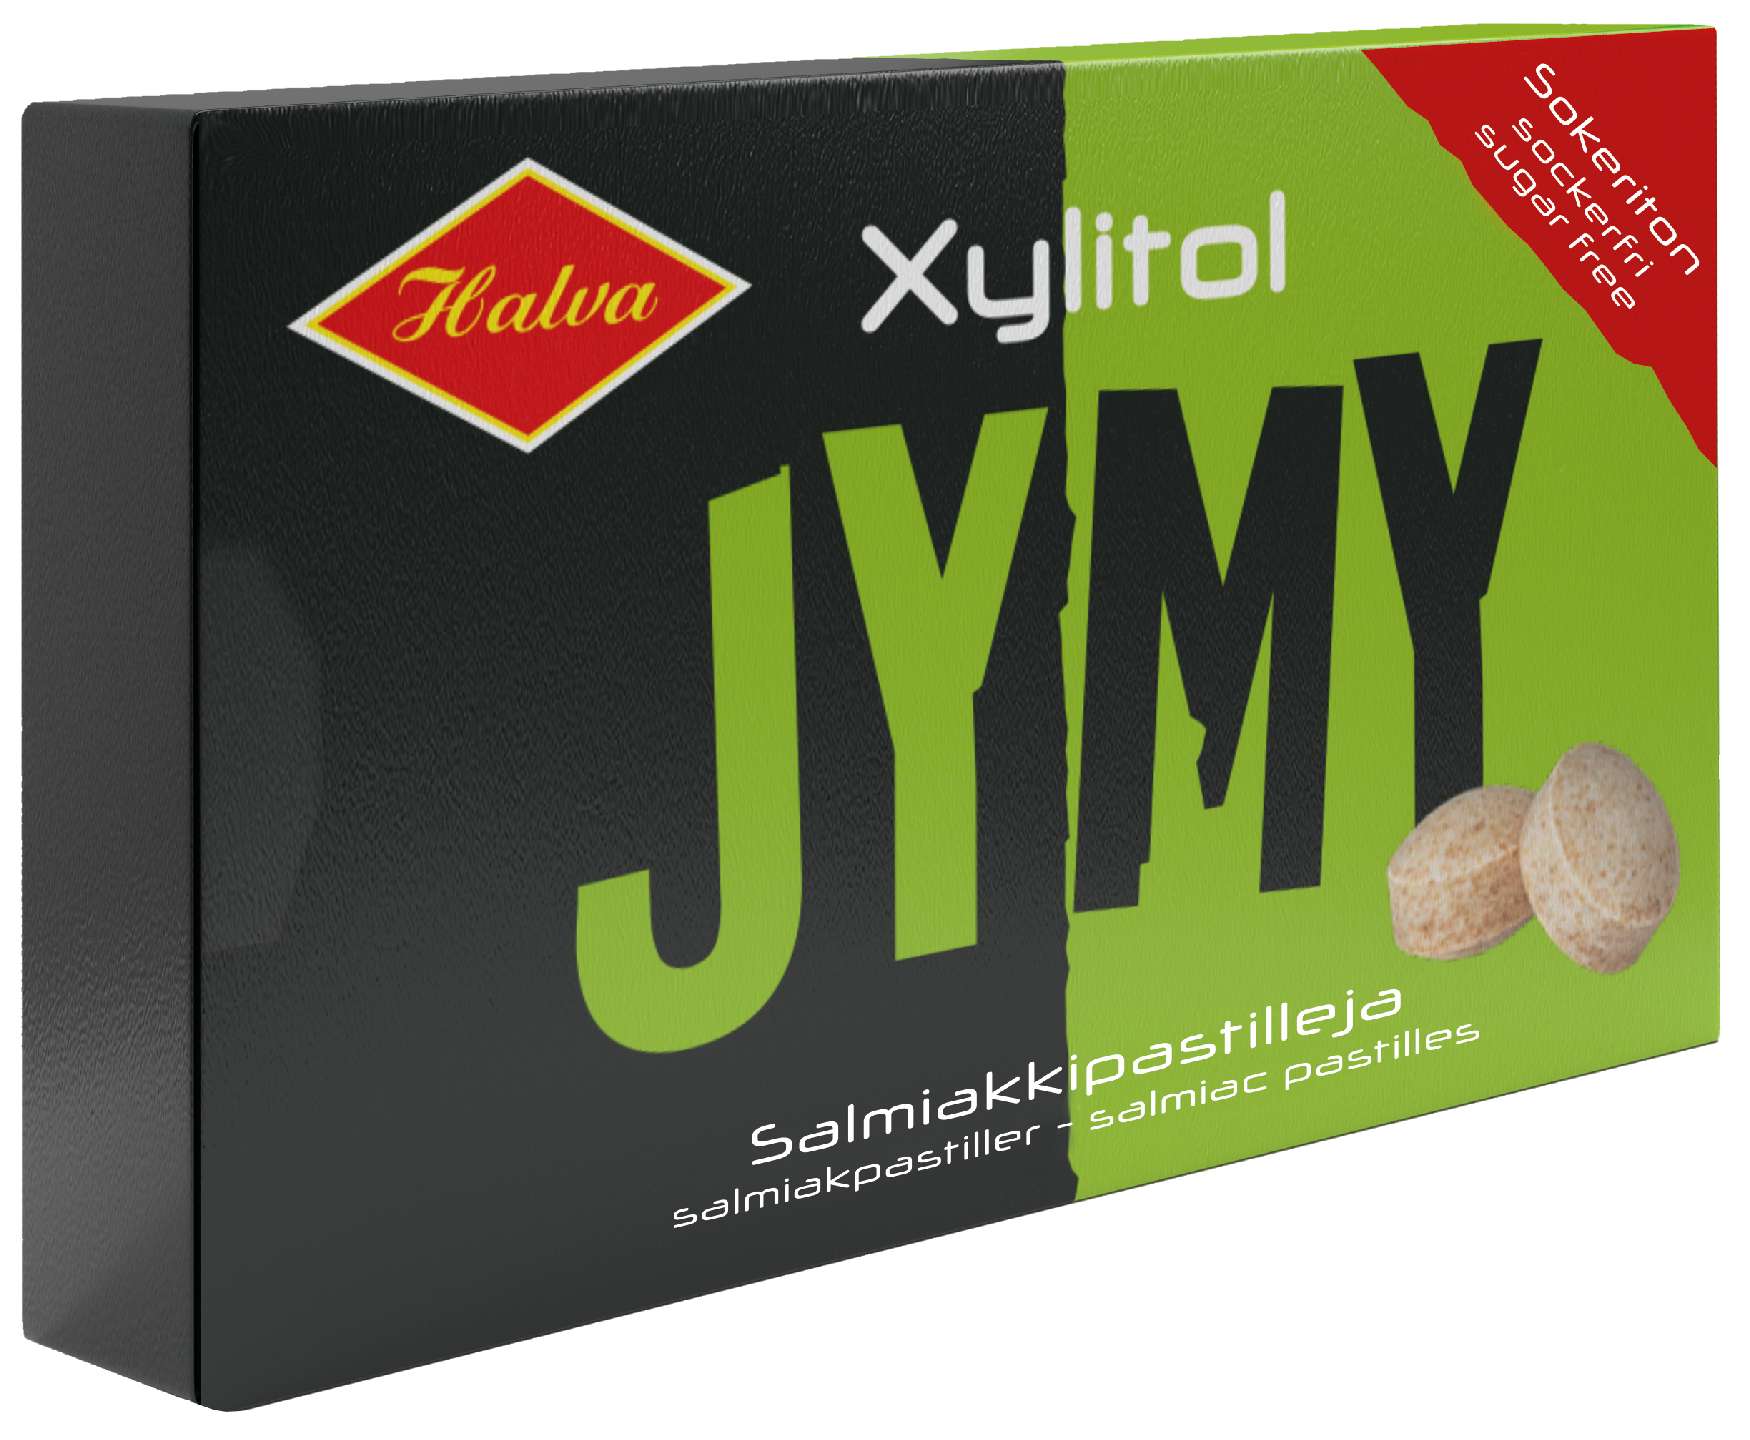 Jymy Xylitol salmiakki pastillit 30g